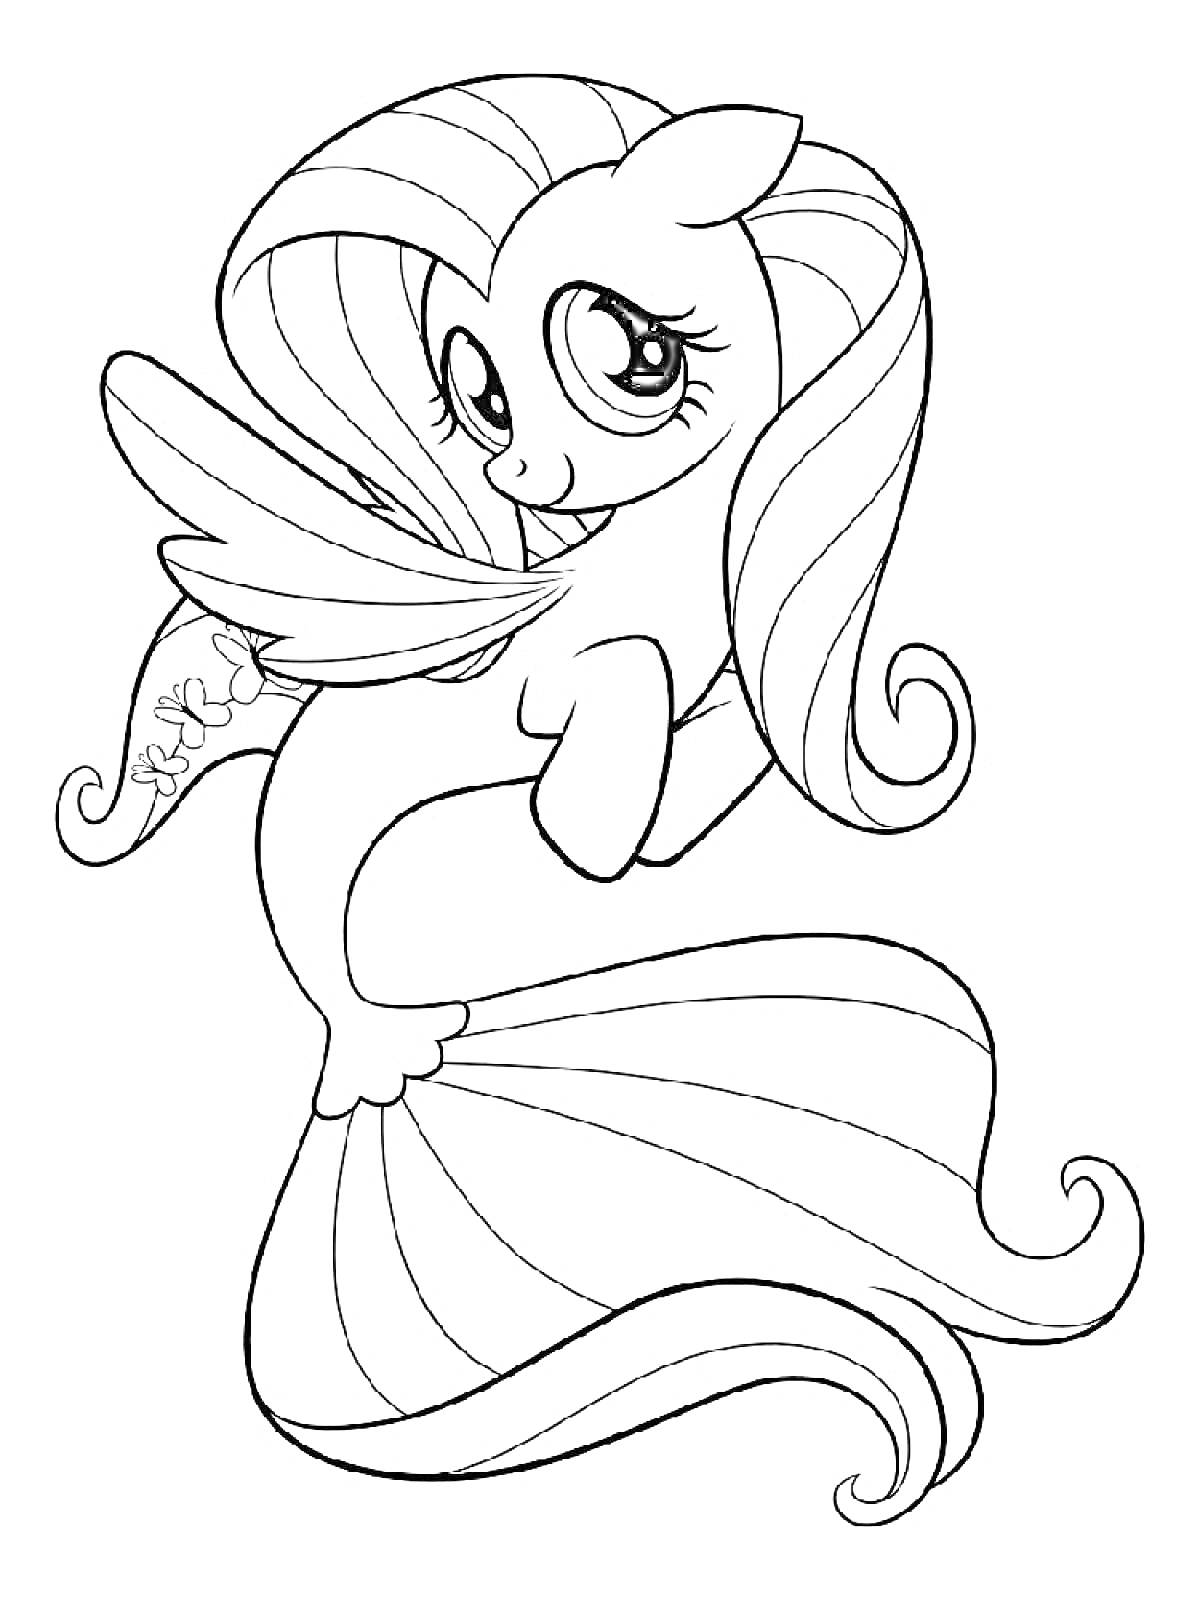 Раскраска Пони-русалка с пушистыми волосами и большими глазами